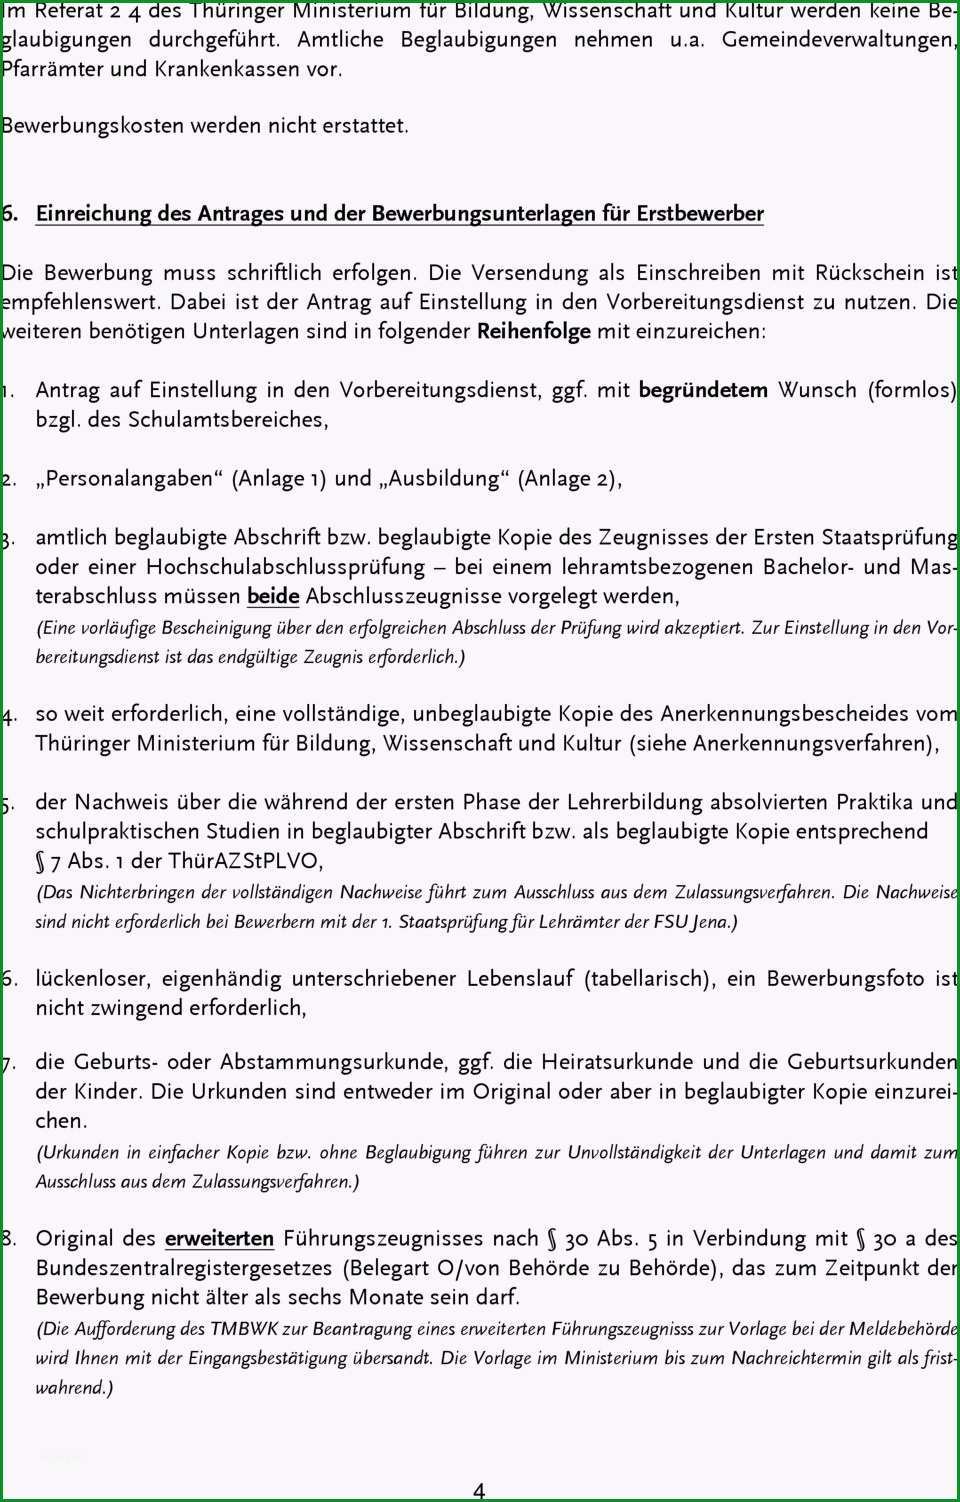 Merkblatt ueber einstellung in den vorbereitungs nst fuer alle lehraemter in thueringen zum einstellungstermin 1 august 2012